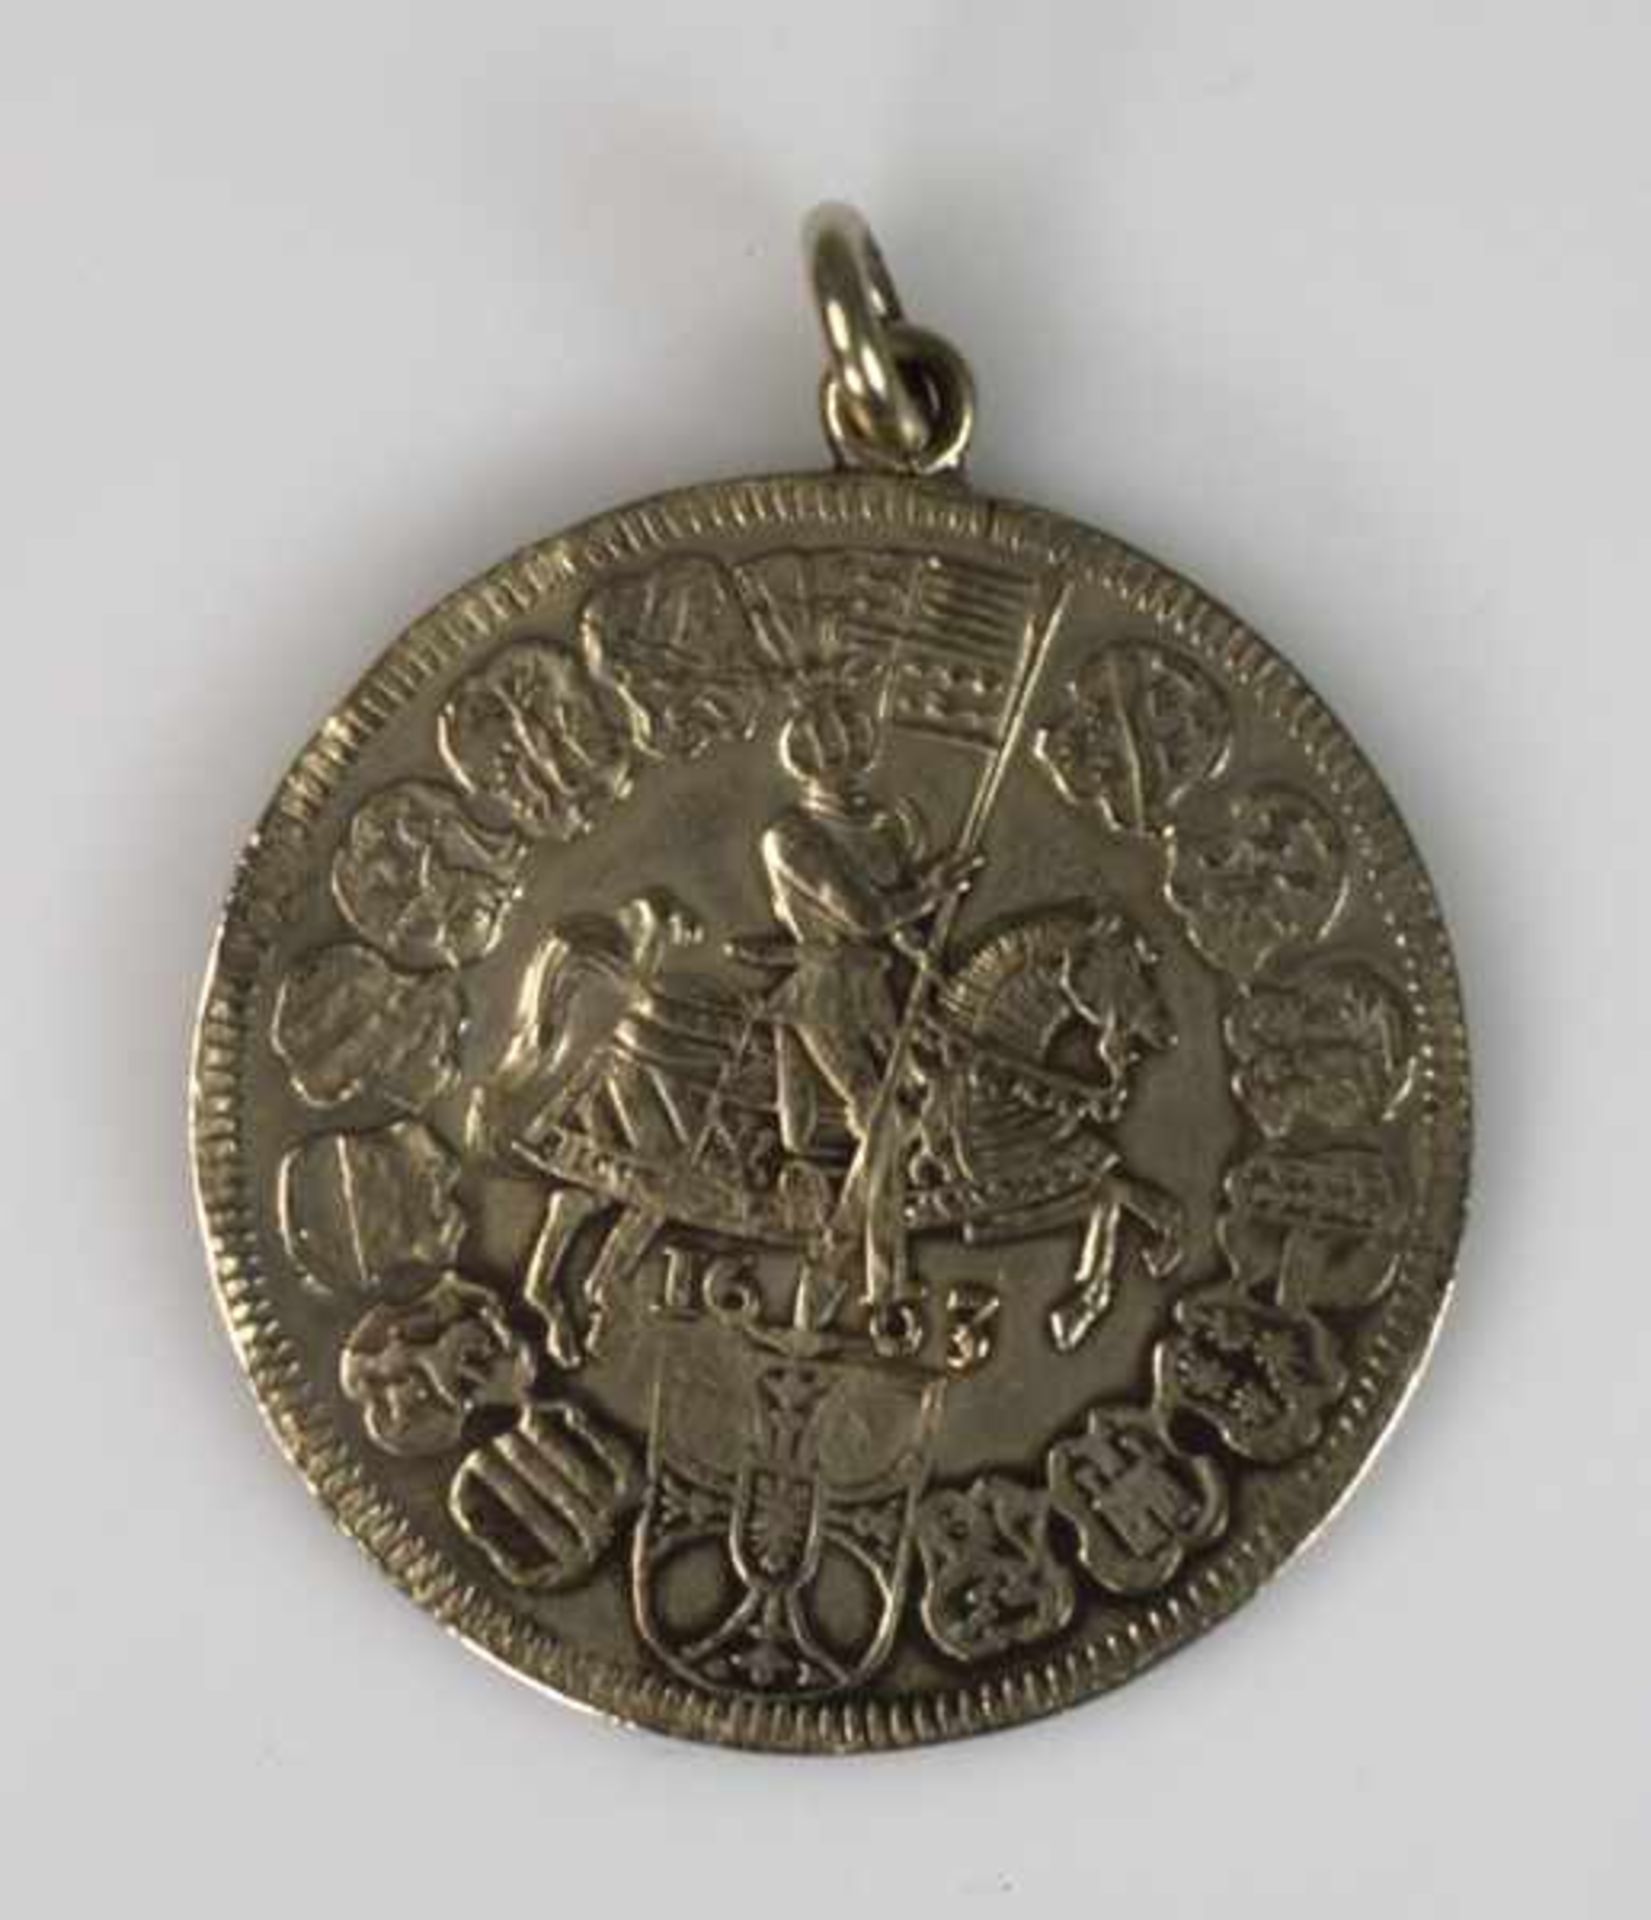 MÜNZANHÄNGER Prägung 1663, Alter. 356 Jahre, D 4,3 cm / 8 g, Kaiser/ König Max, Deutscher Orden